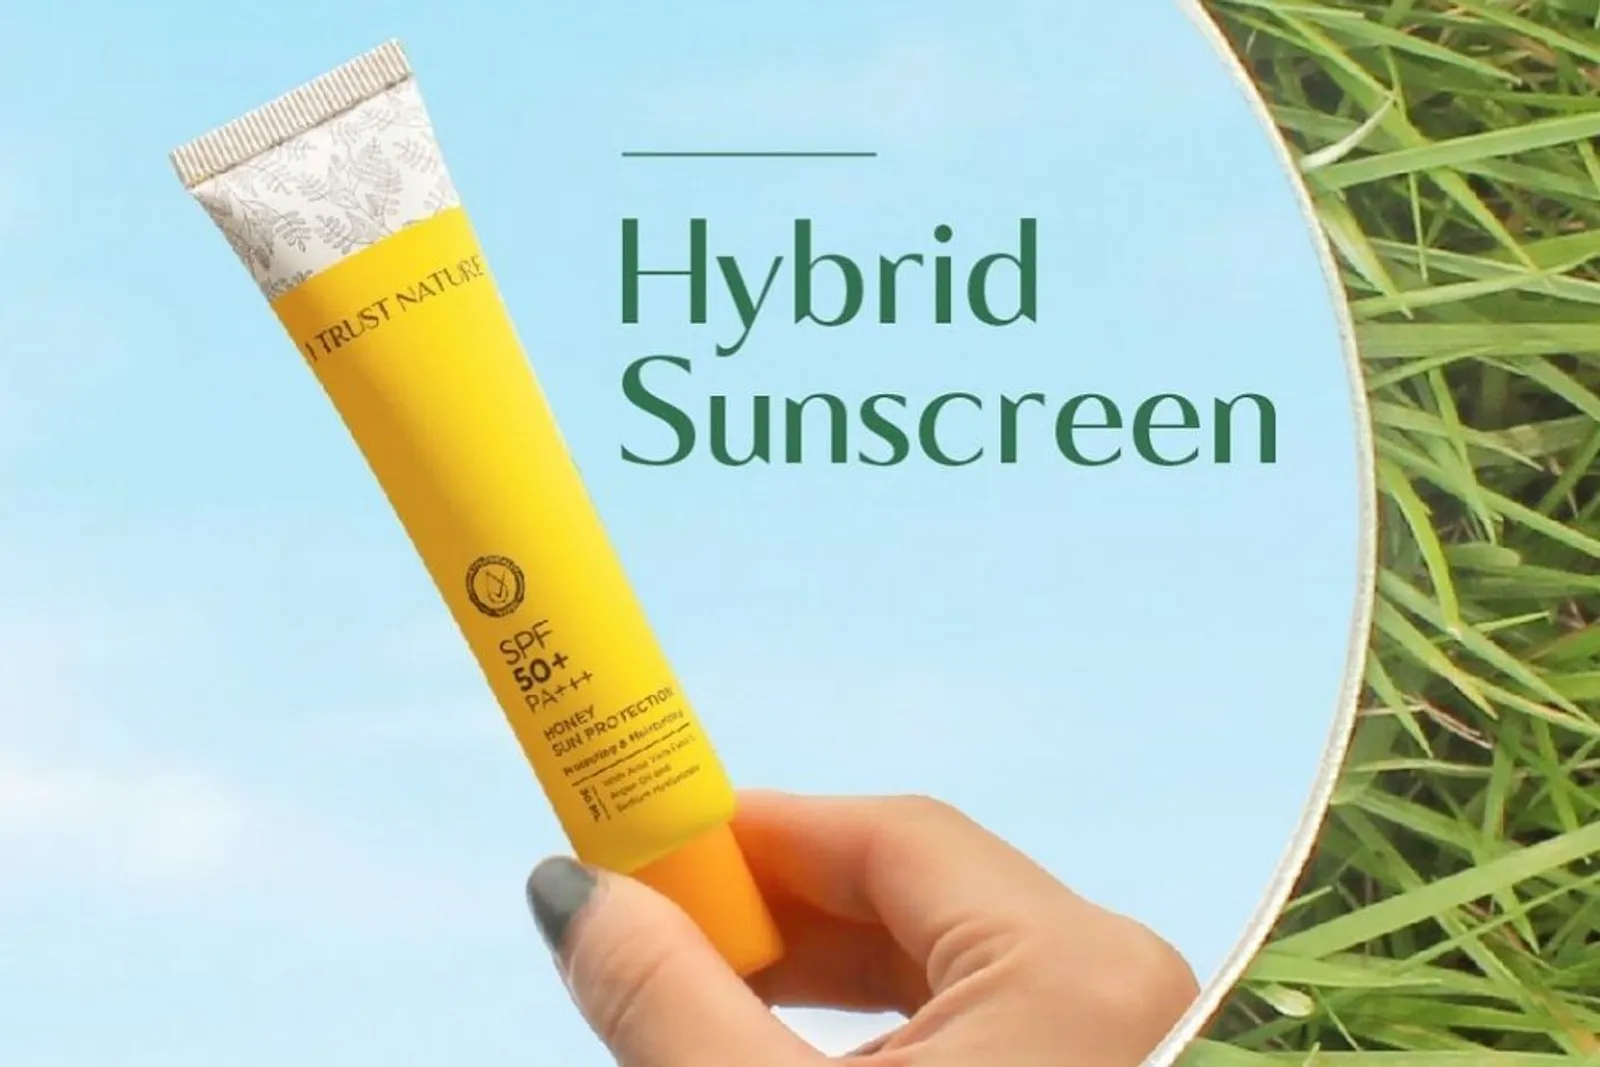 7 Rekomendasi Hybrid Sunscreen, Cocok untuk Semua Jenis Kulit